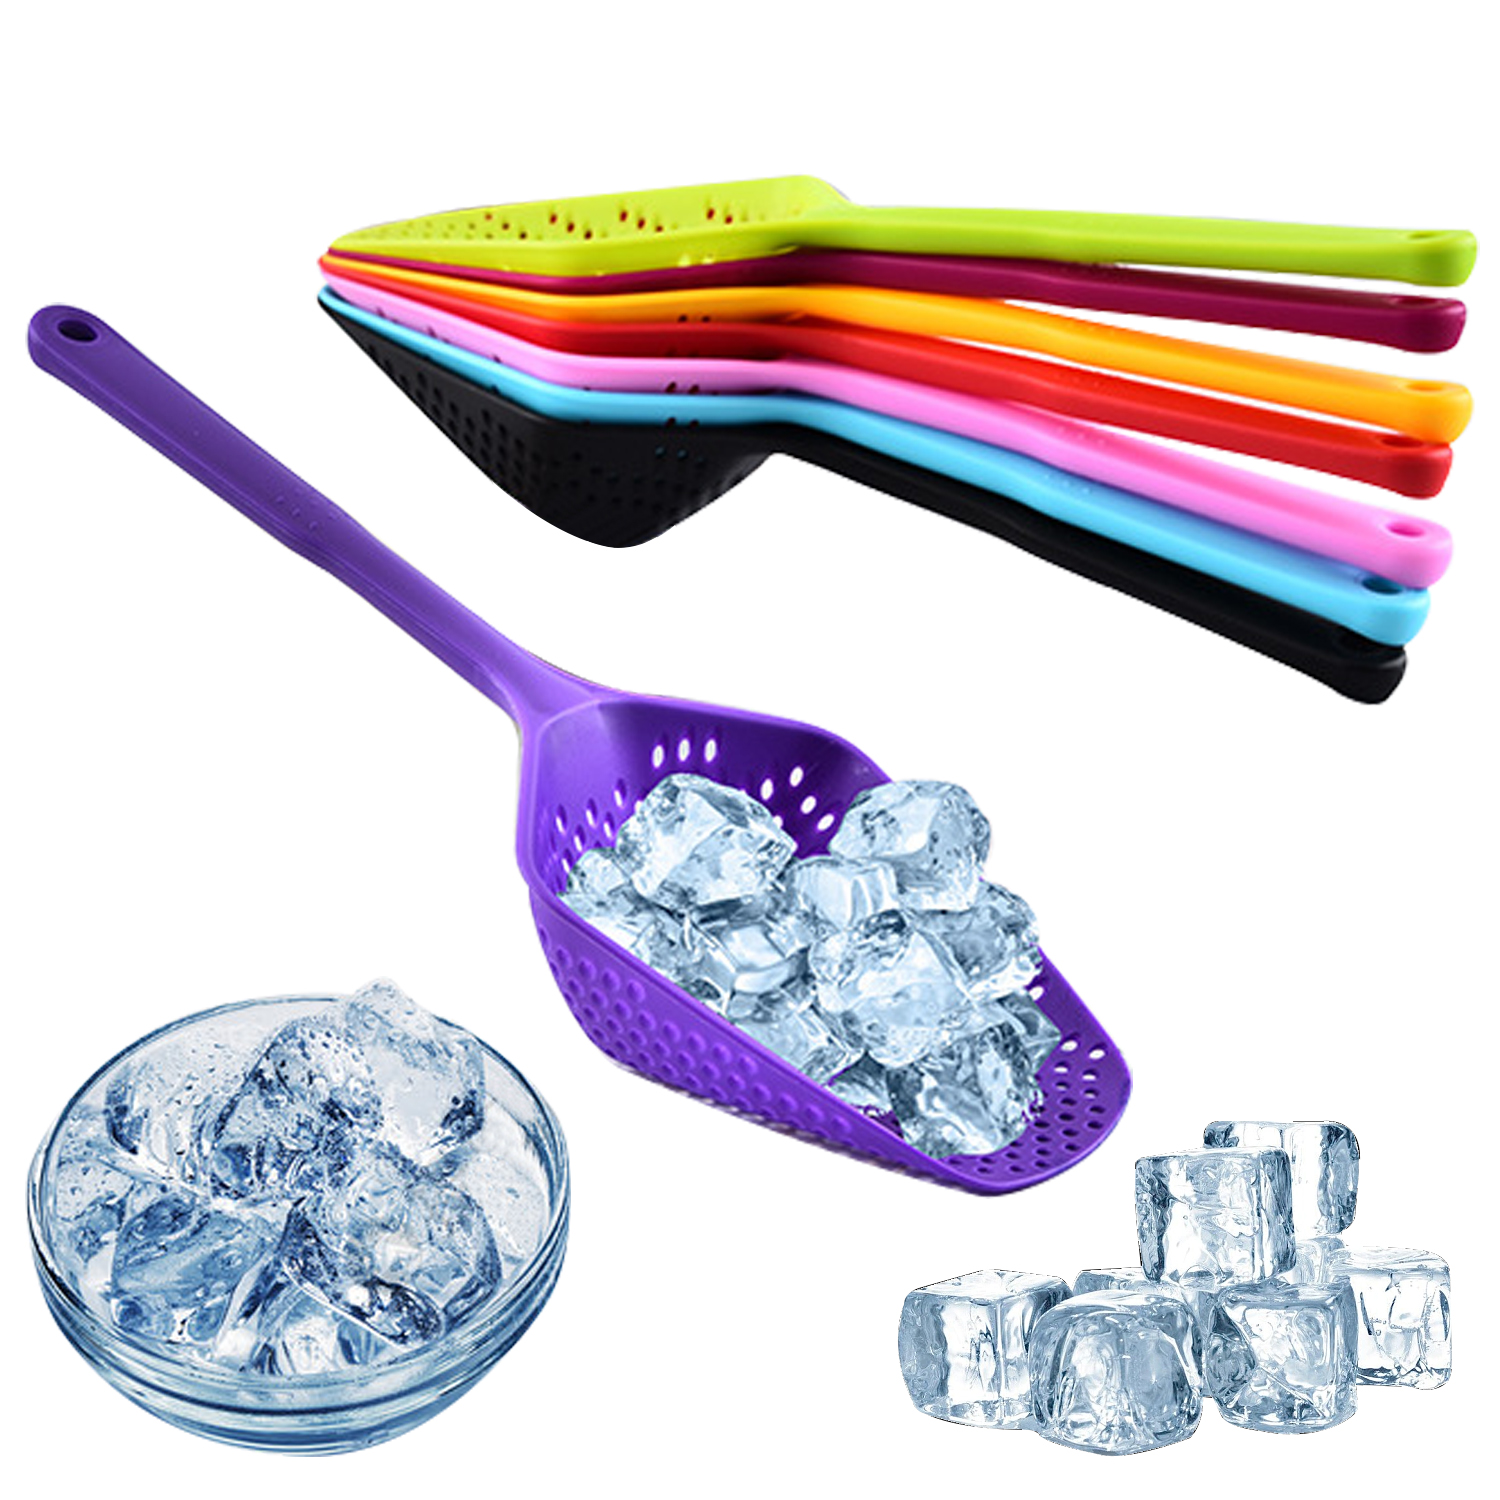 Colador de cuchara de sopa portátil, cucharón colorido de nailon para cocina, espumadera antiescaldaduras para freír alimentos, coladores de filtro prácticos de malla, herramientas de cocina